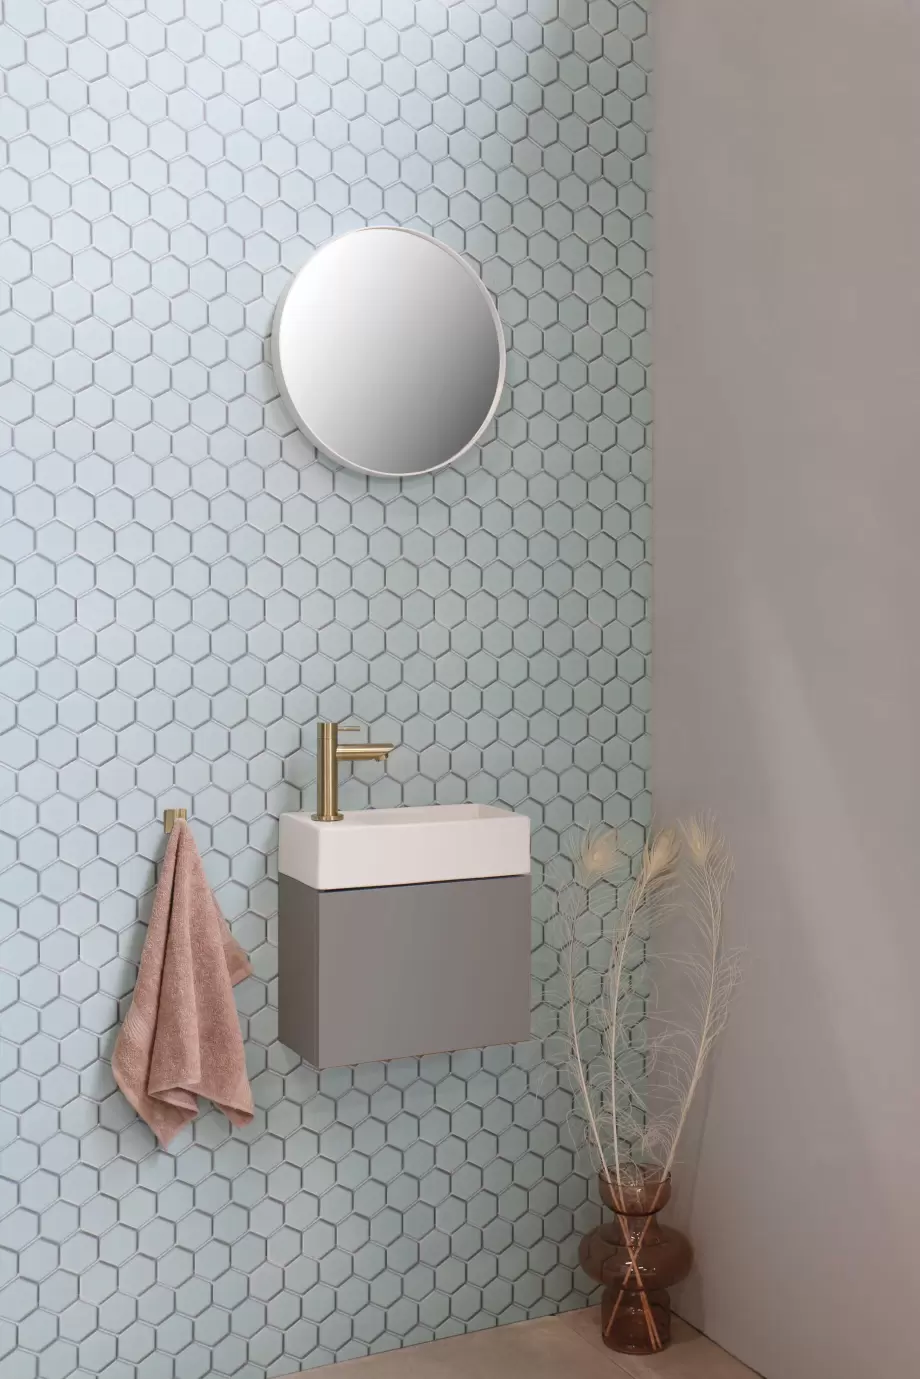 Versus porselein mat wit - onderkast mat taupe - spiegel rond mat wit